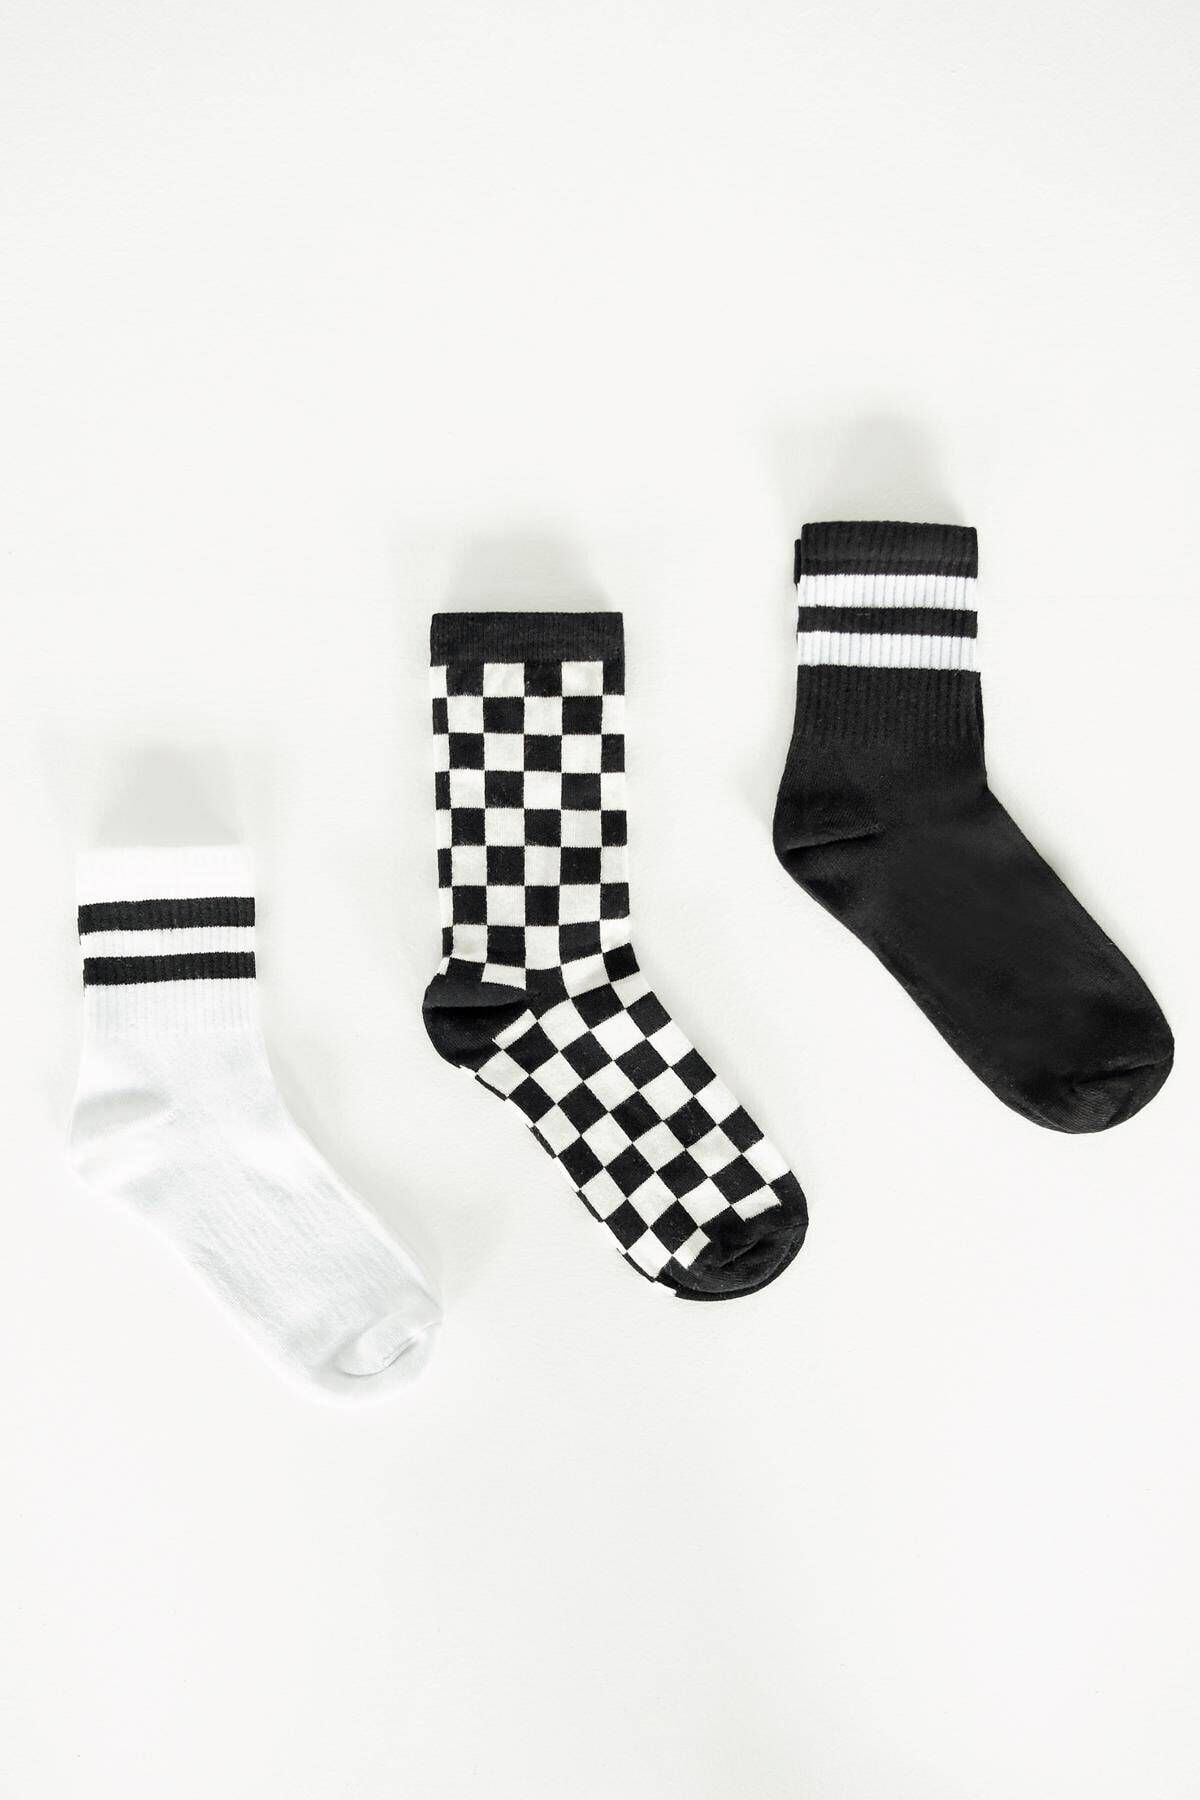 Addax Kadın Renkli Üçlü Çorap Seti ÇRP1000 - B11 ADX-0000020698